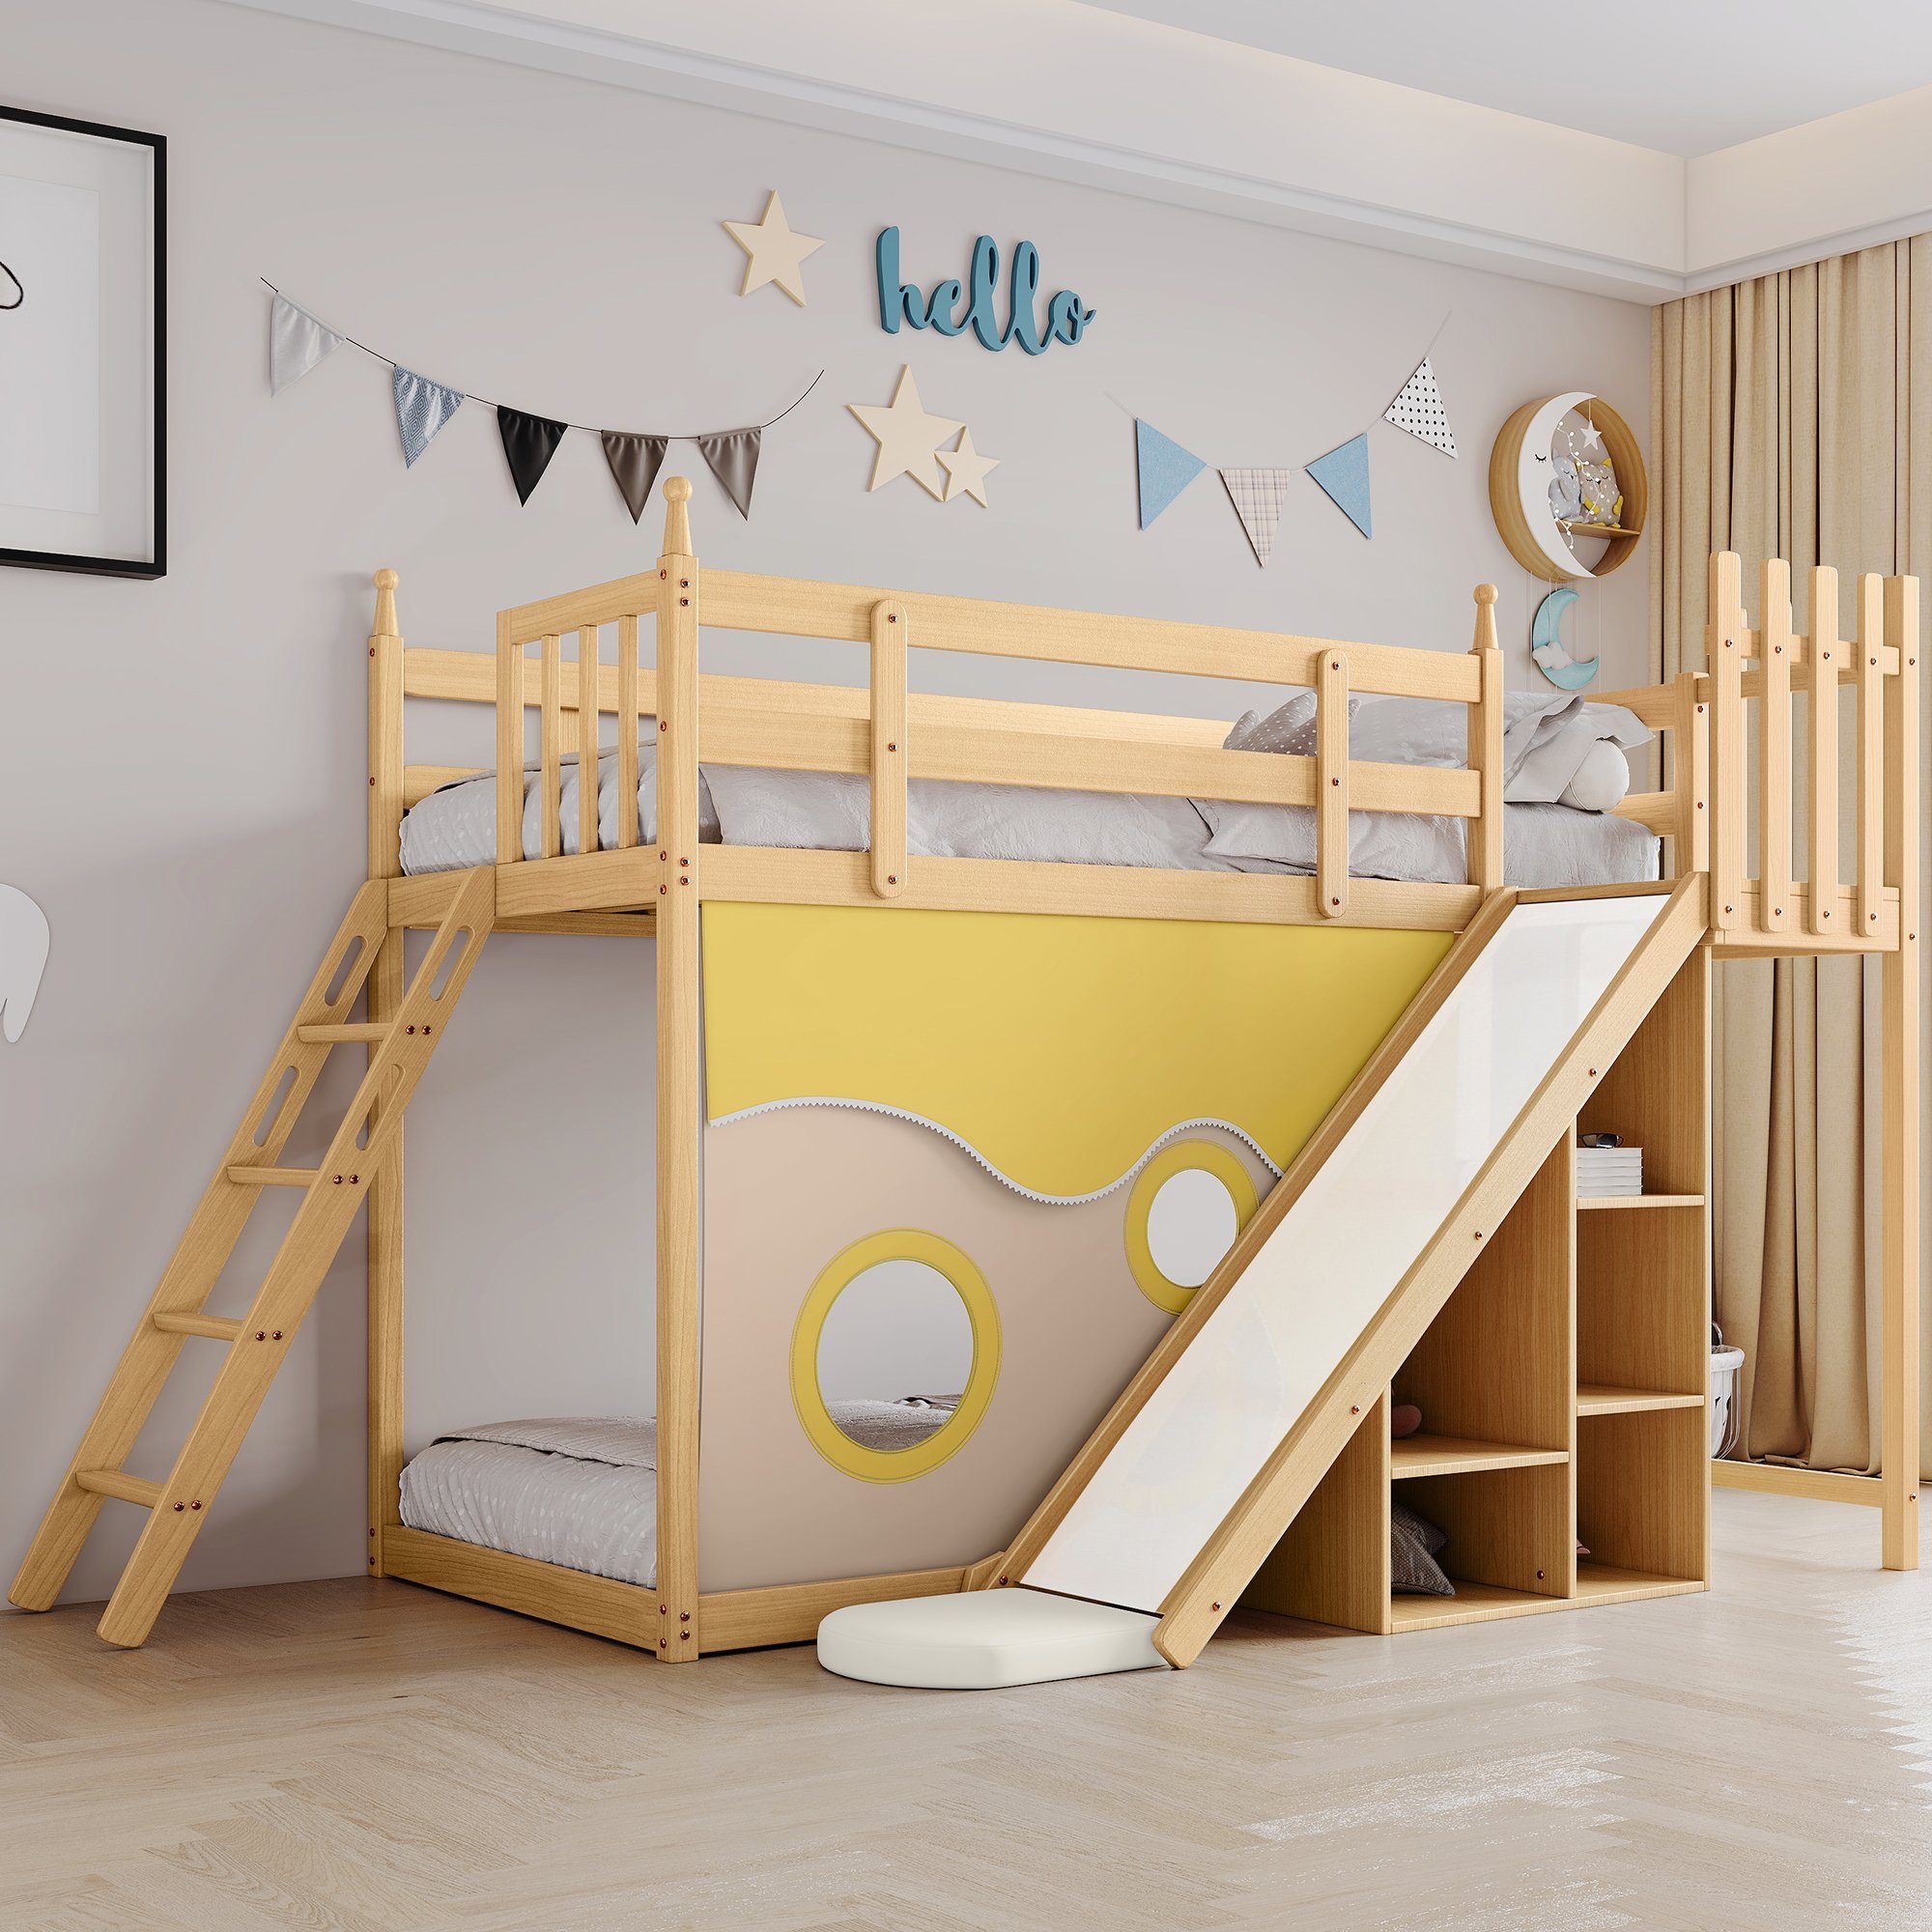 Ulife Etagenbett Kinderbett Holzbett mit Treppe und Zäune, Bett mit Fallschutz und Gitter